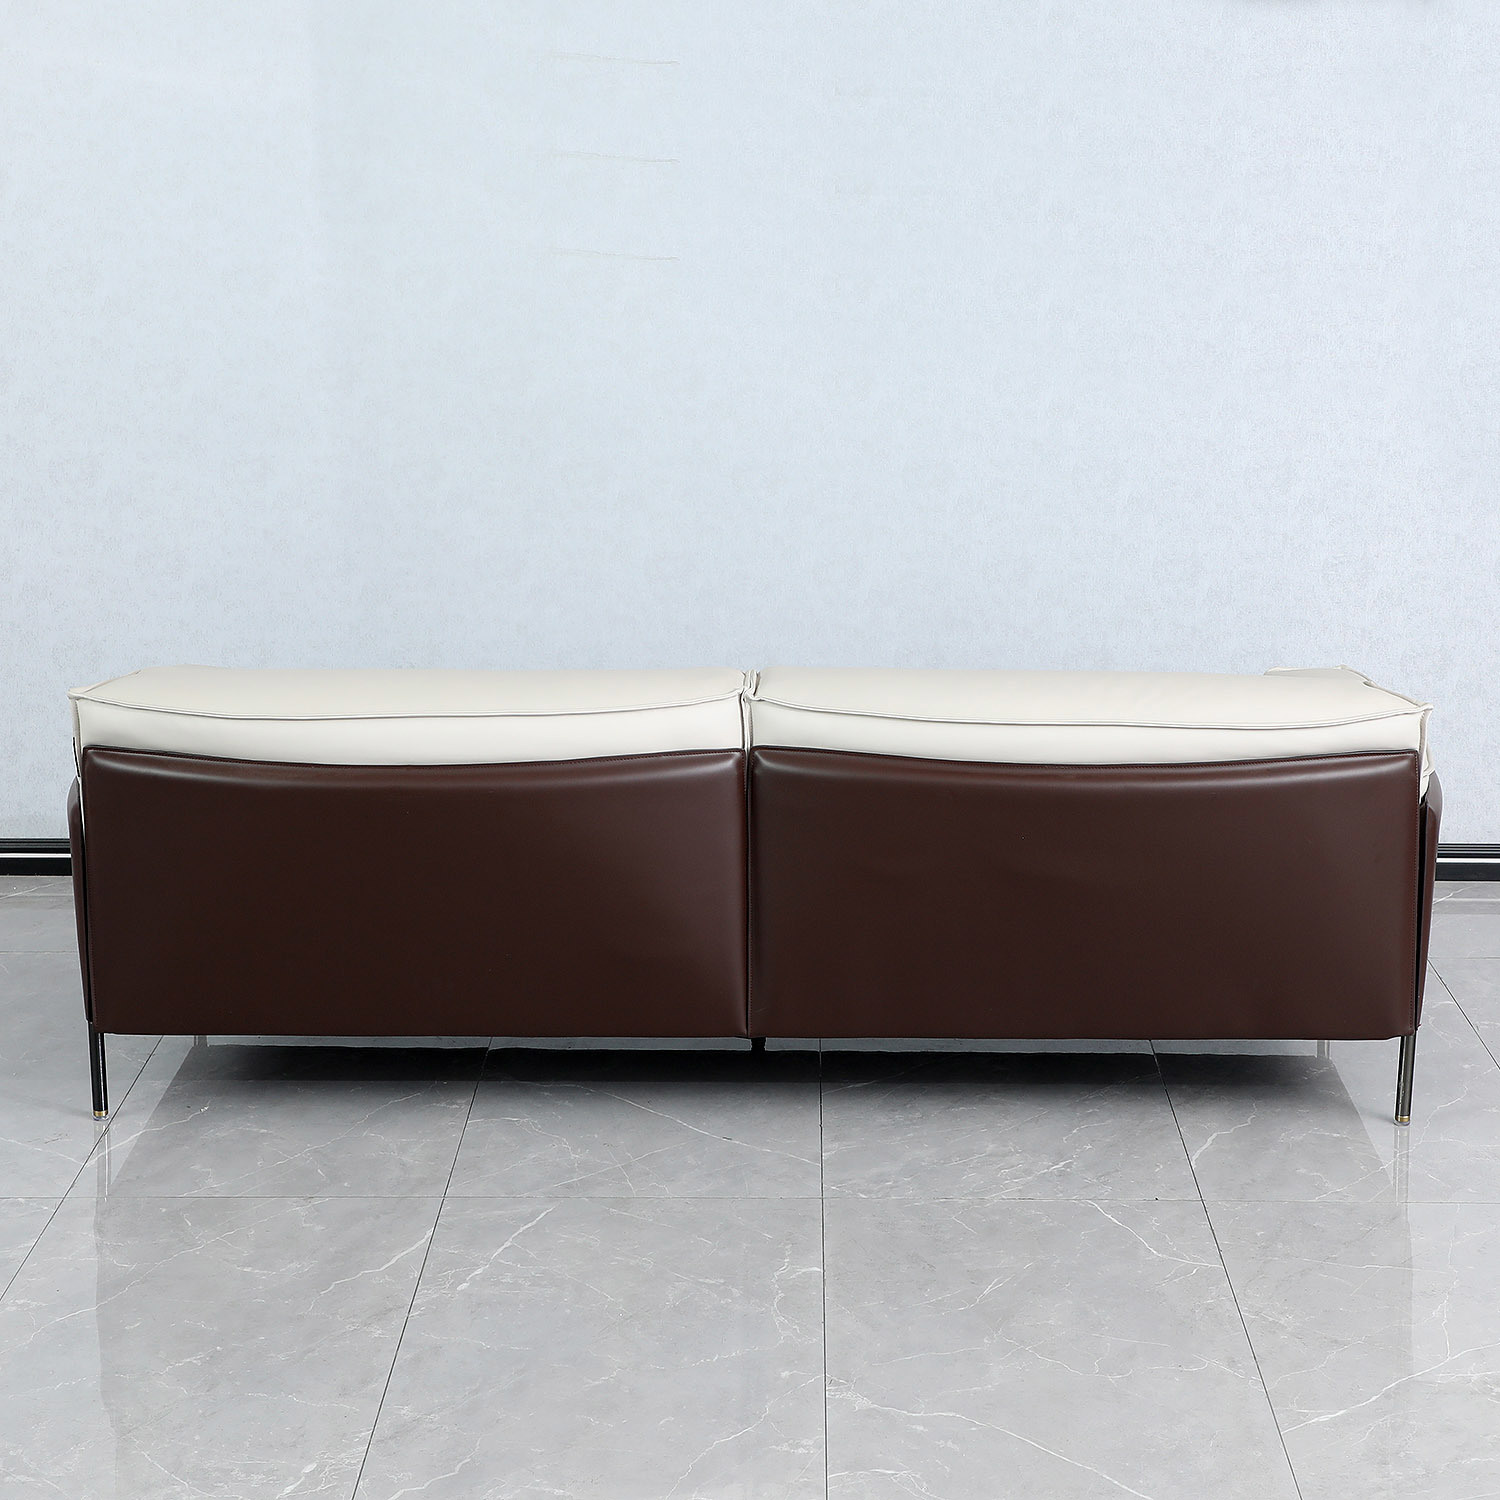 Living Furniture Italian Style Leather Sofa Three Seat Sofa